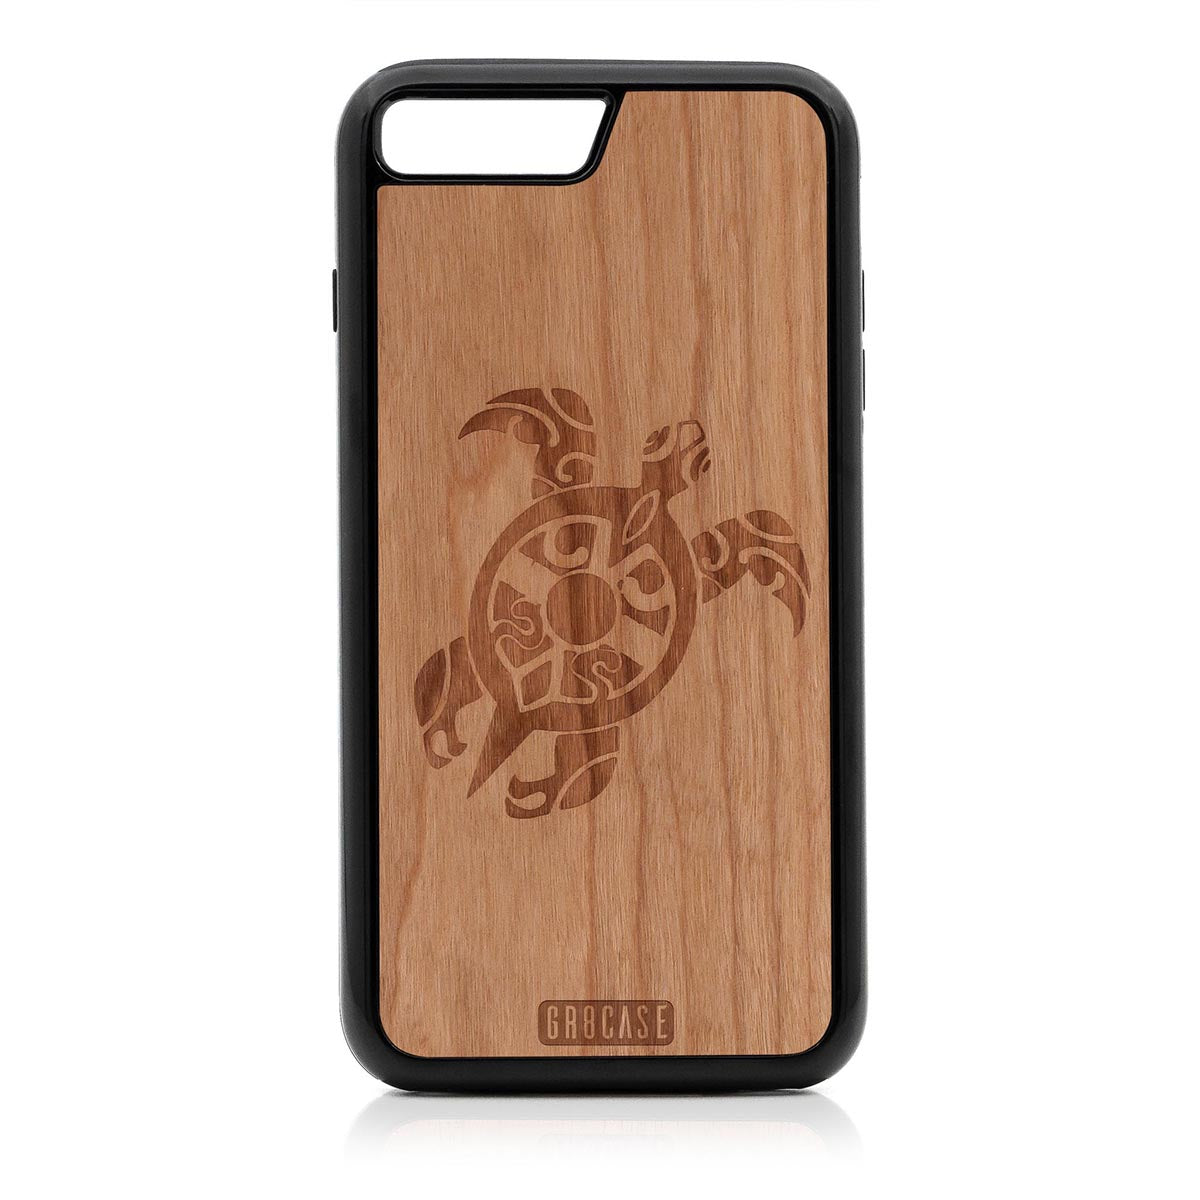 Turtle Design Wood Case For iPhone 7 Plus / 8 Plus